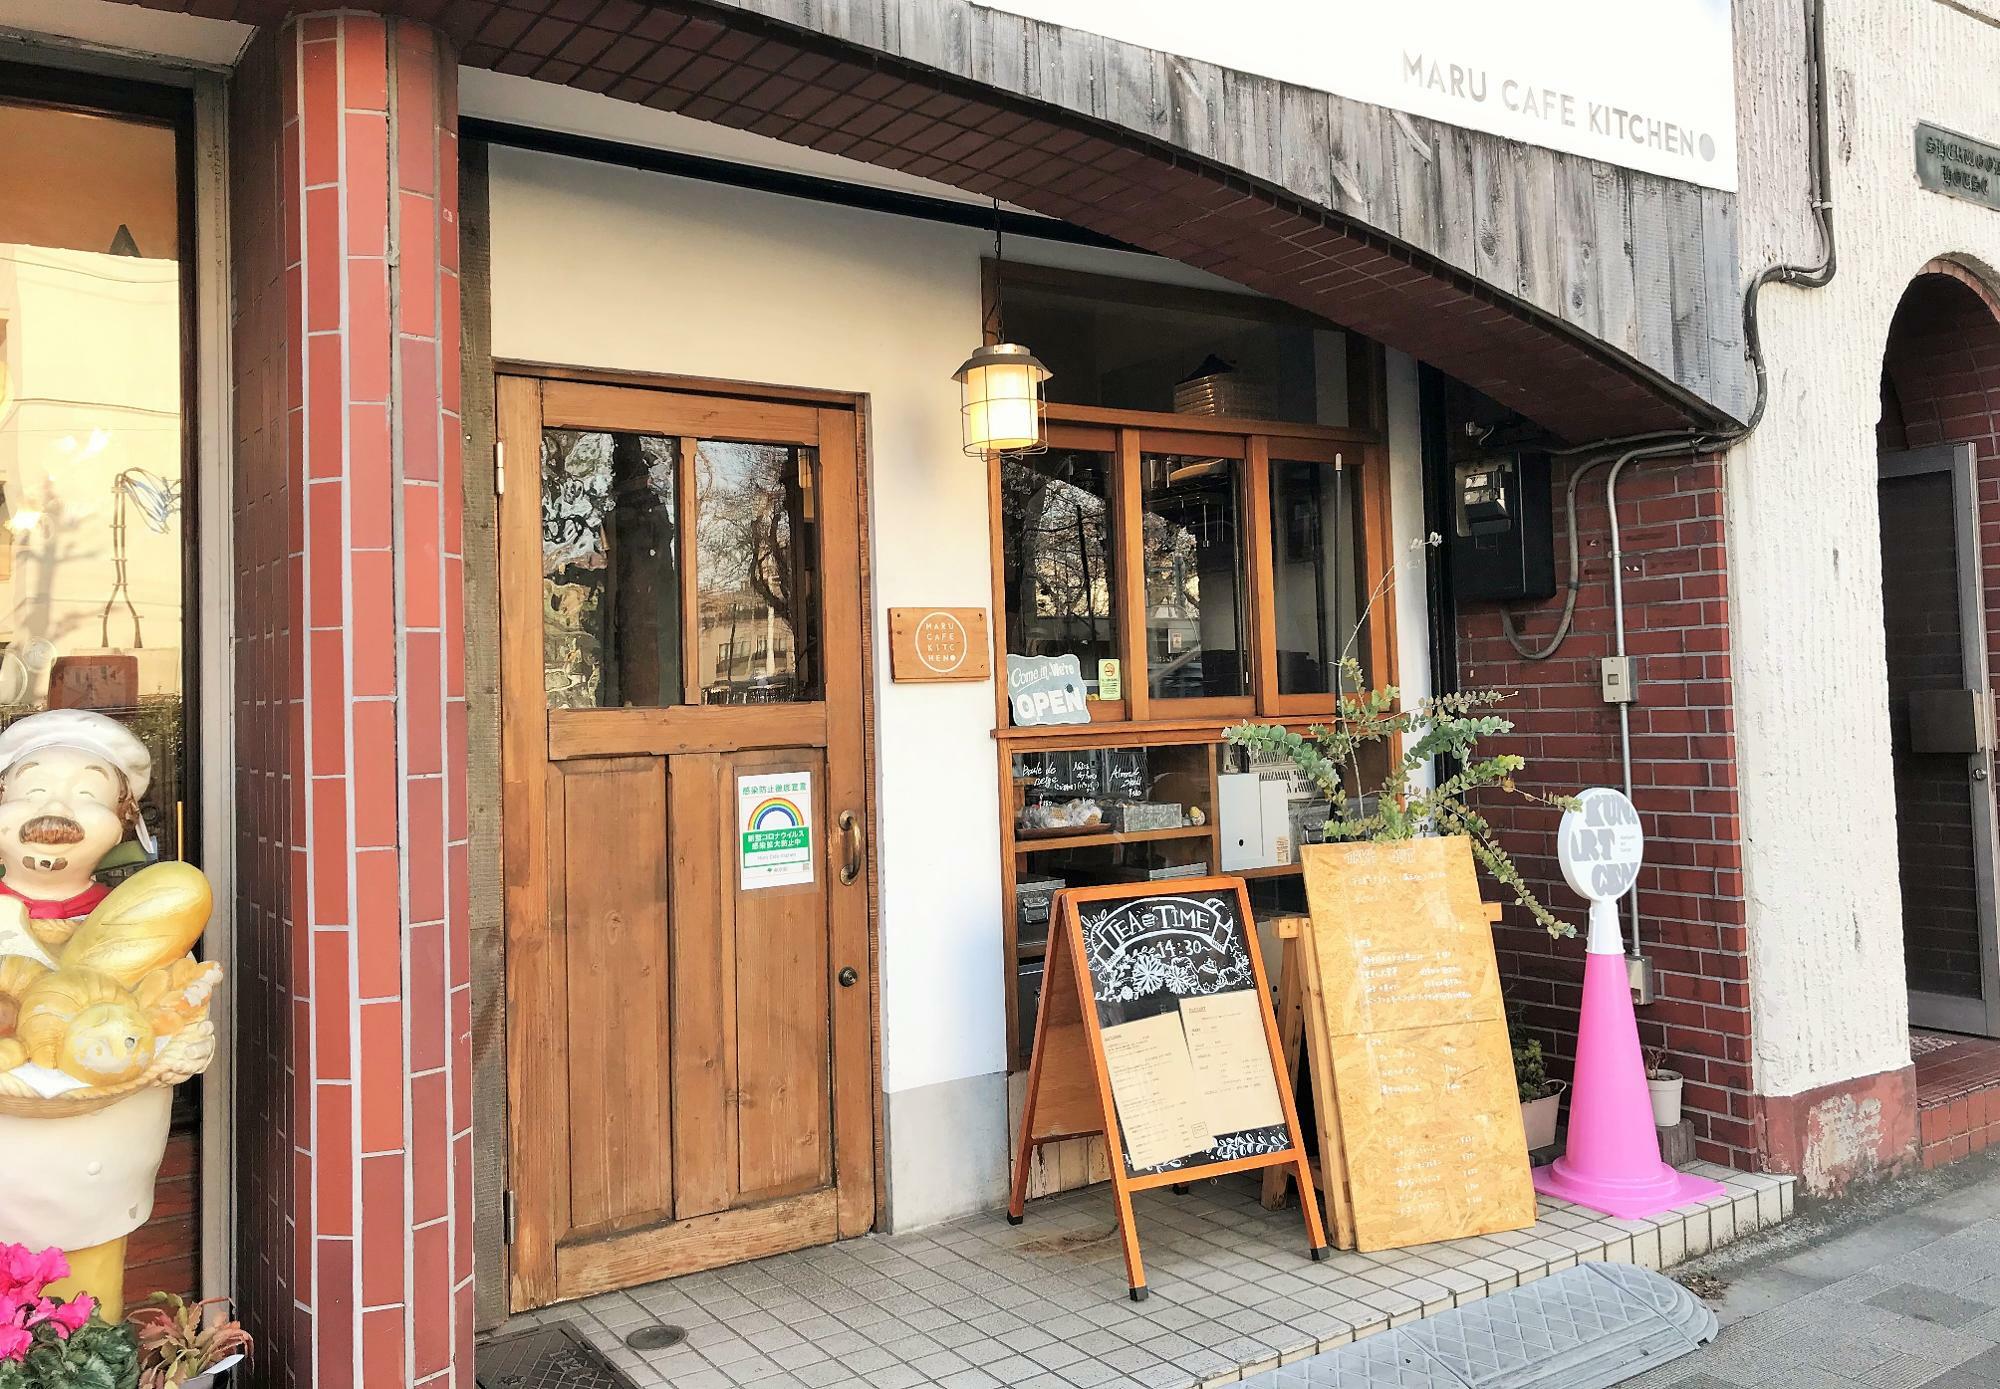 Maru Cafe Kitchen